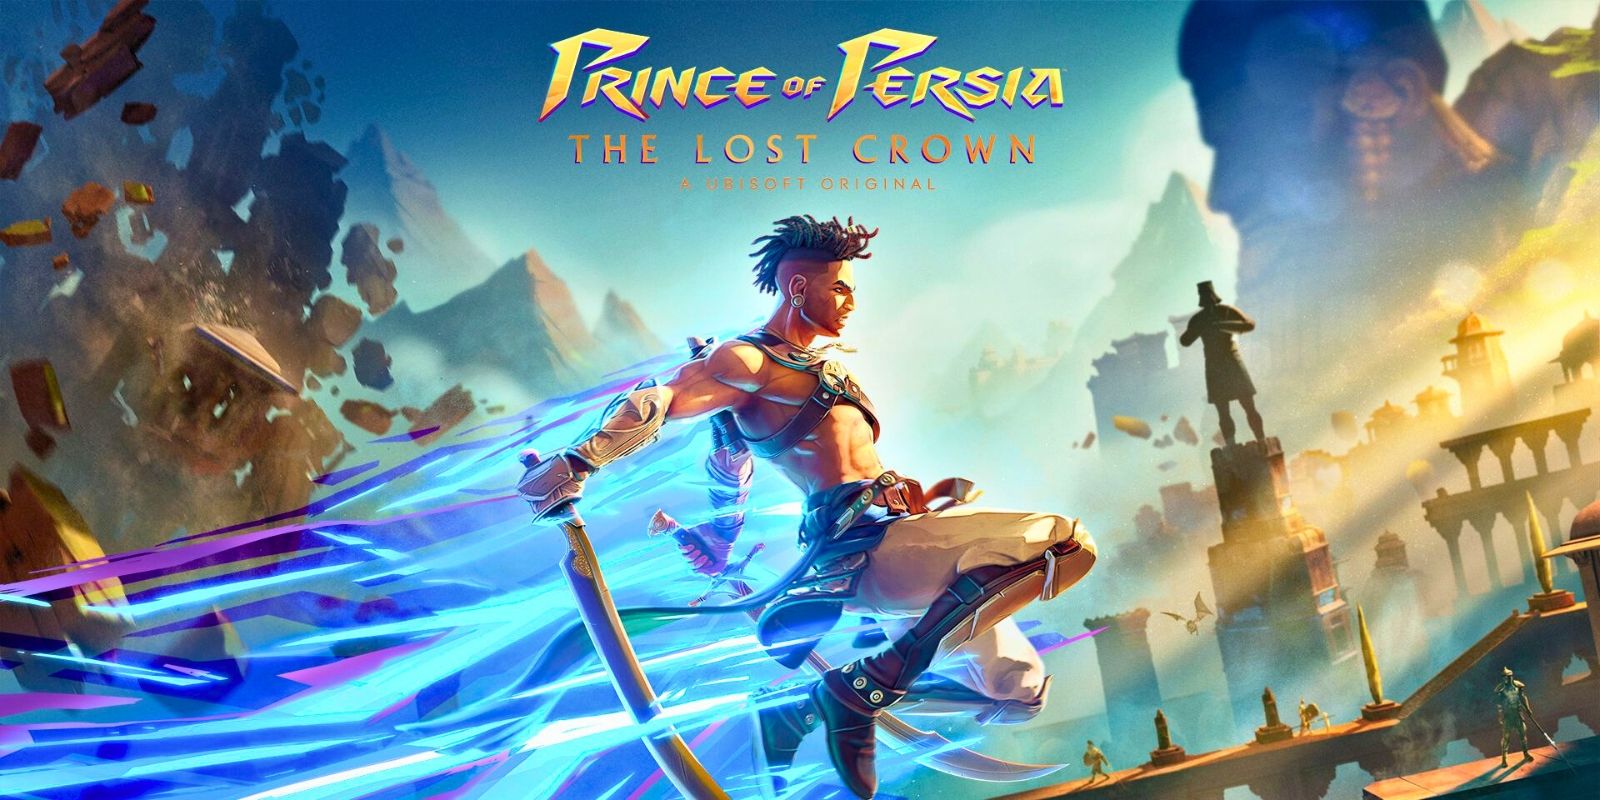 Prince of Persia: The Lost Crown Review: "Una historia decepcionante redimida por un combate fascinante"